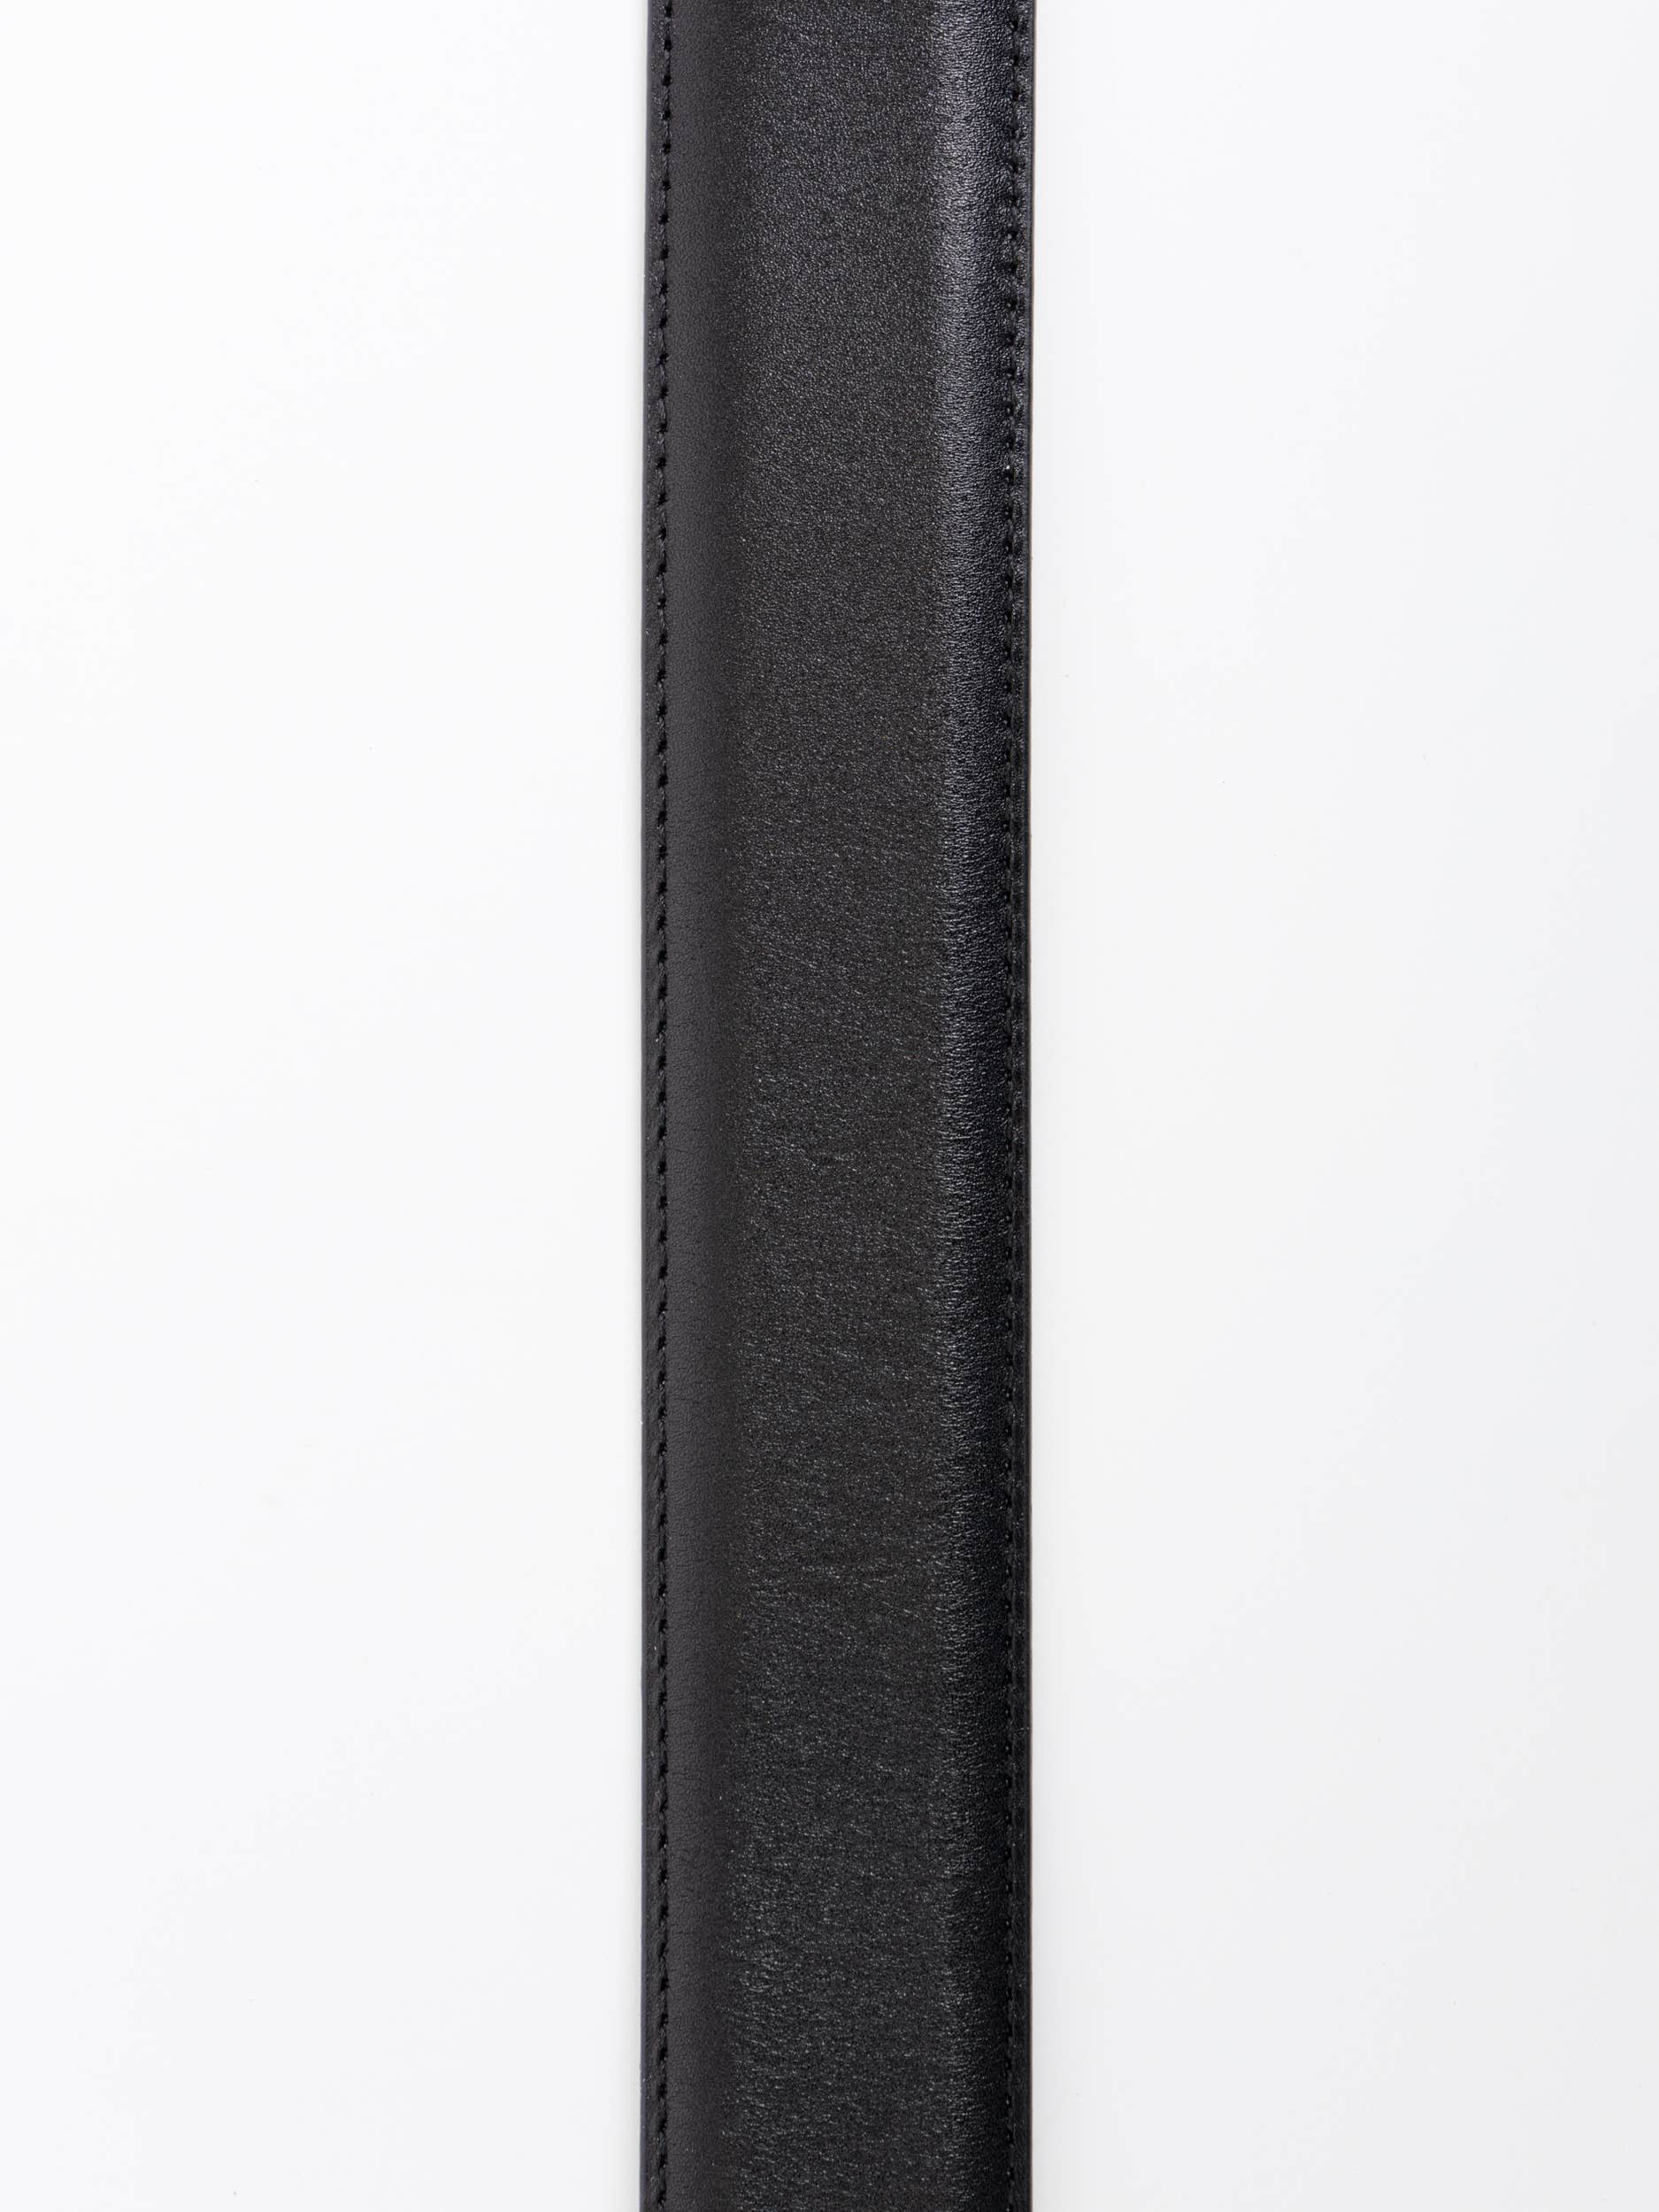 Black Carbon Leather Belt